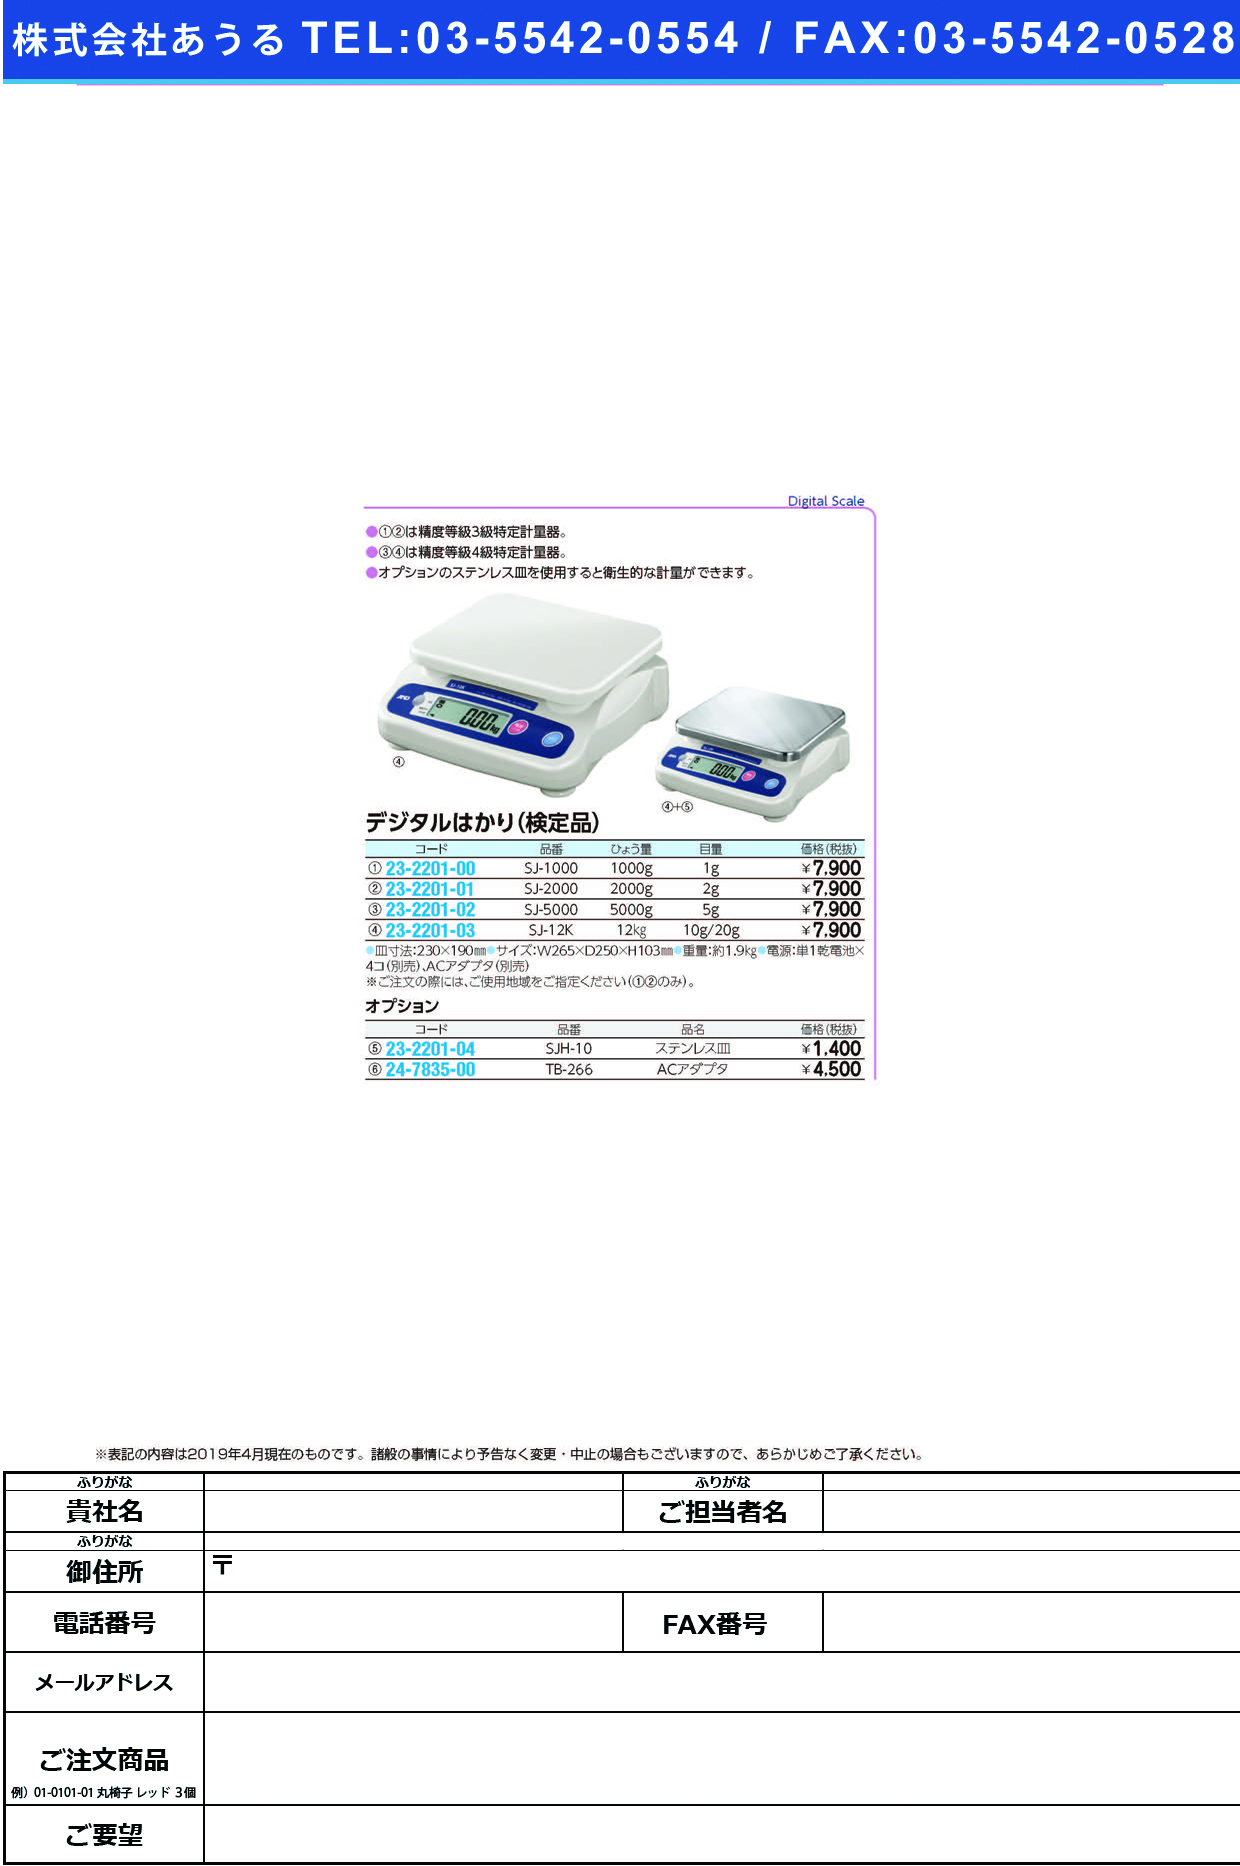 (23-2201-02)デジタルはかり（検定品） SJ-5000 ﾃﾞｼﾞﾀﾙﾊｶﾘ(ｹﾝﾃｲﾋﾝ)【1台単位】【2019年カタログ商品】